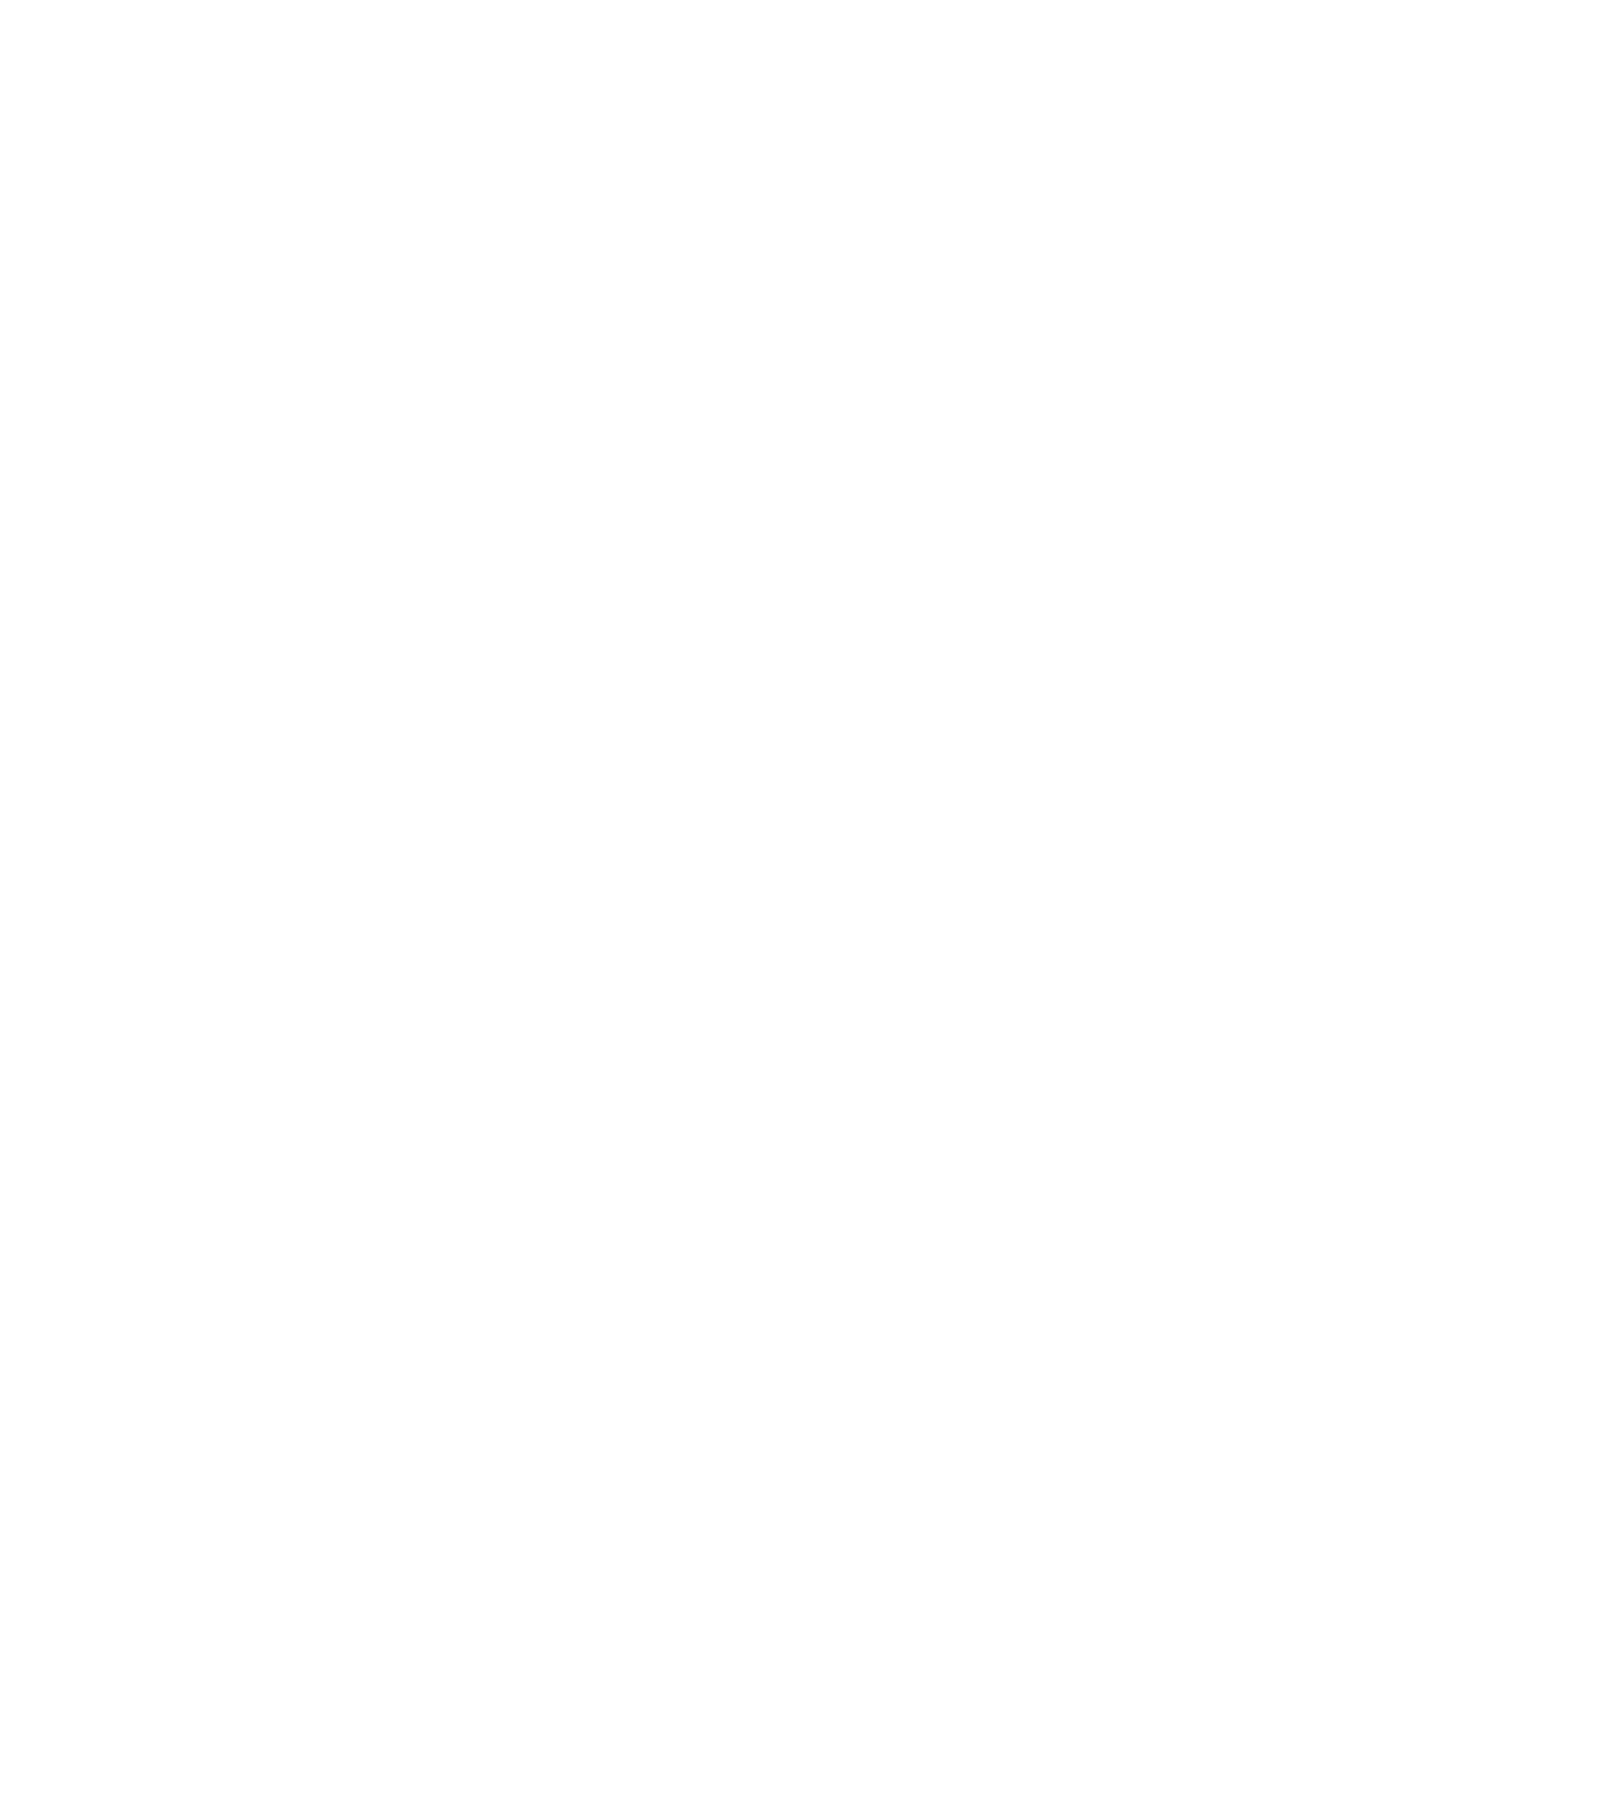 Starbreeze logo grand pour les fonds sombres (PNG transparent)